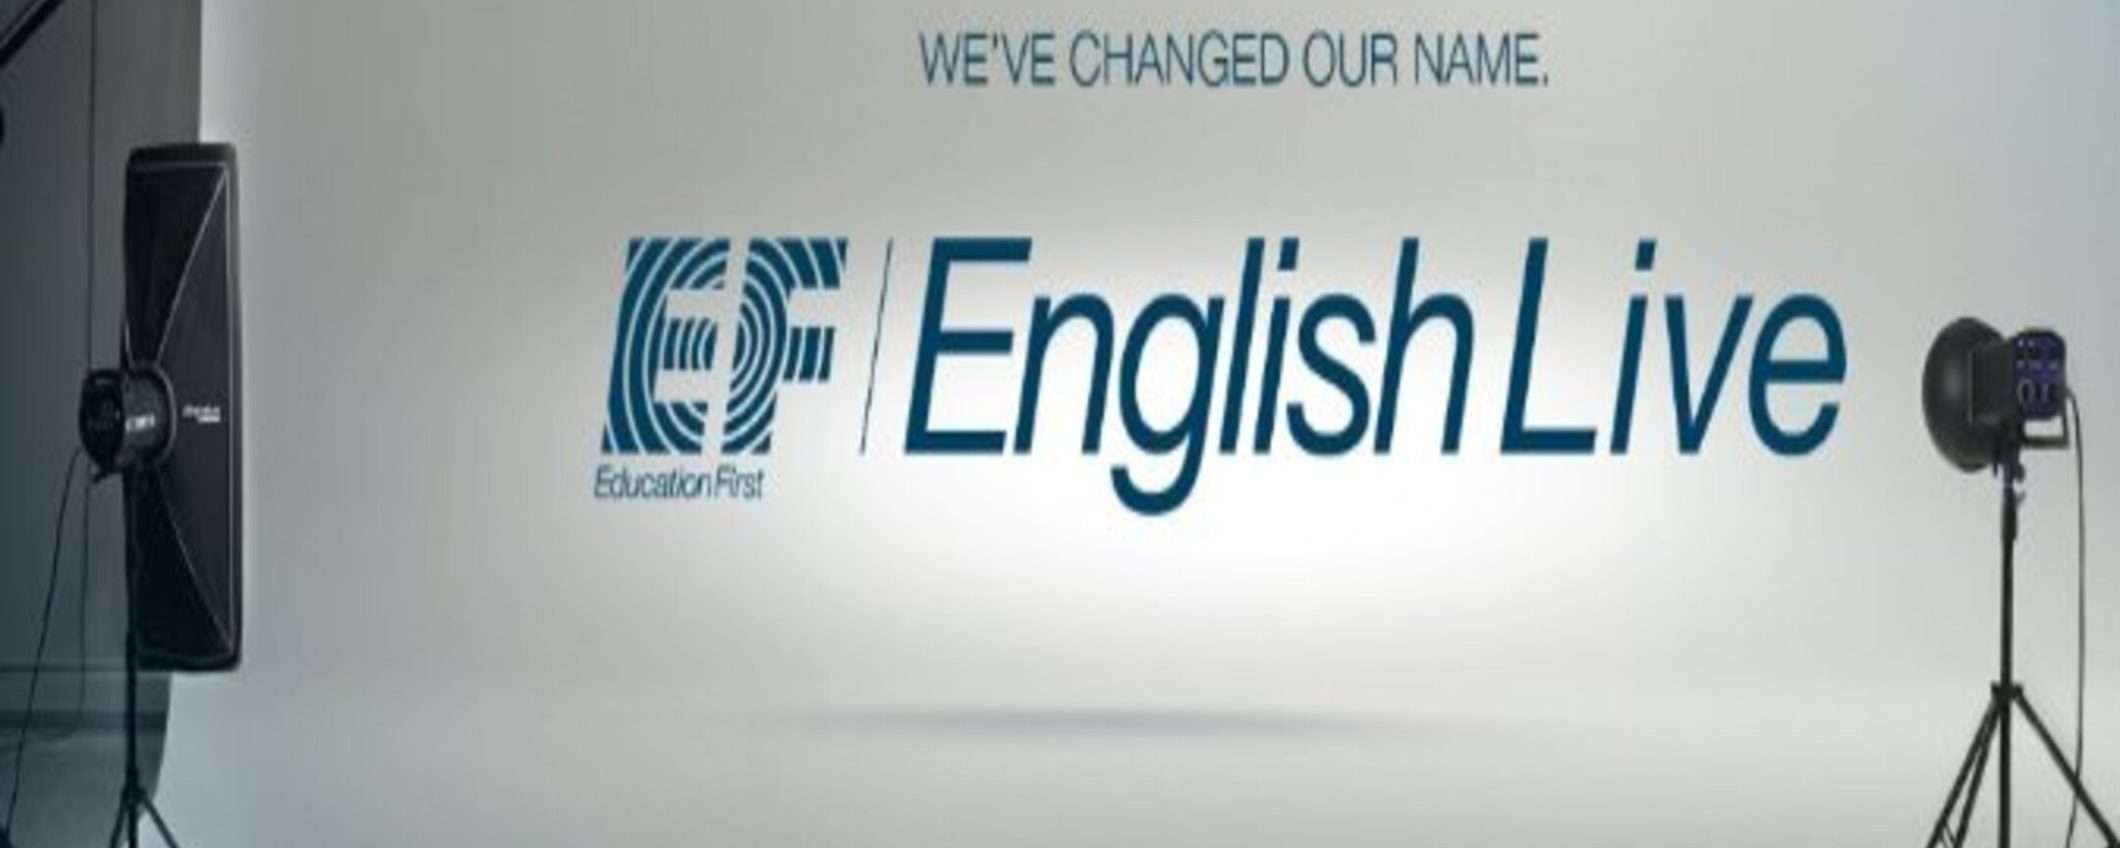 Metodo EF English: la soluzione efficace per imparare l'inglese